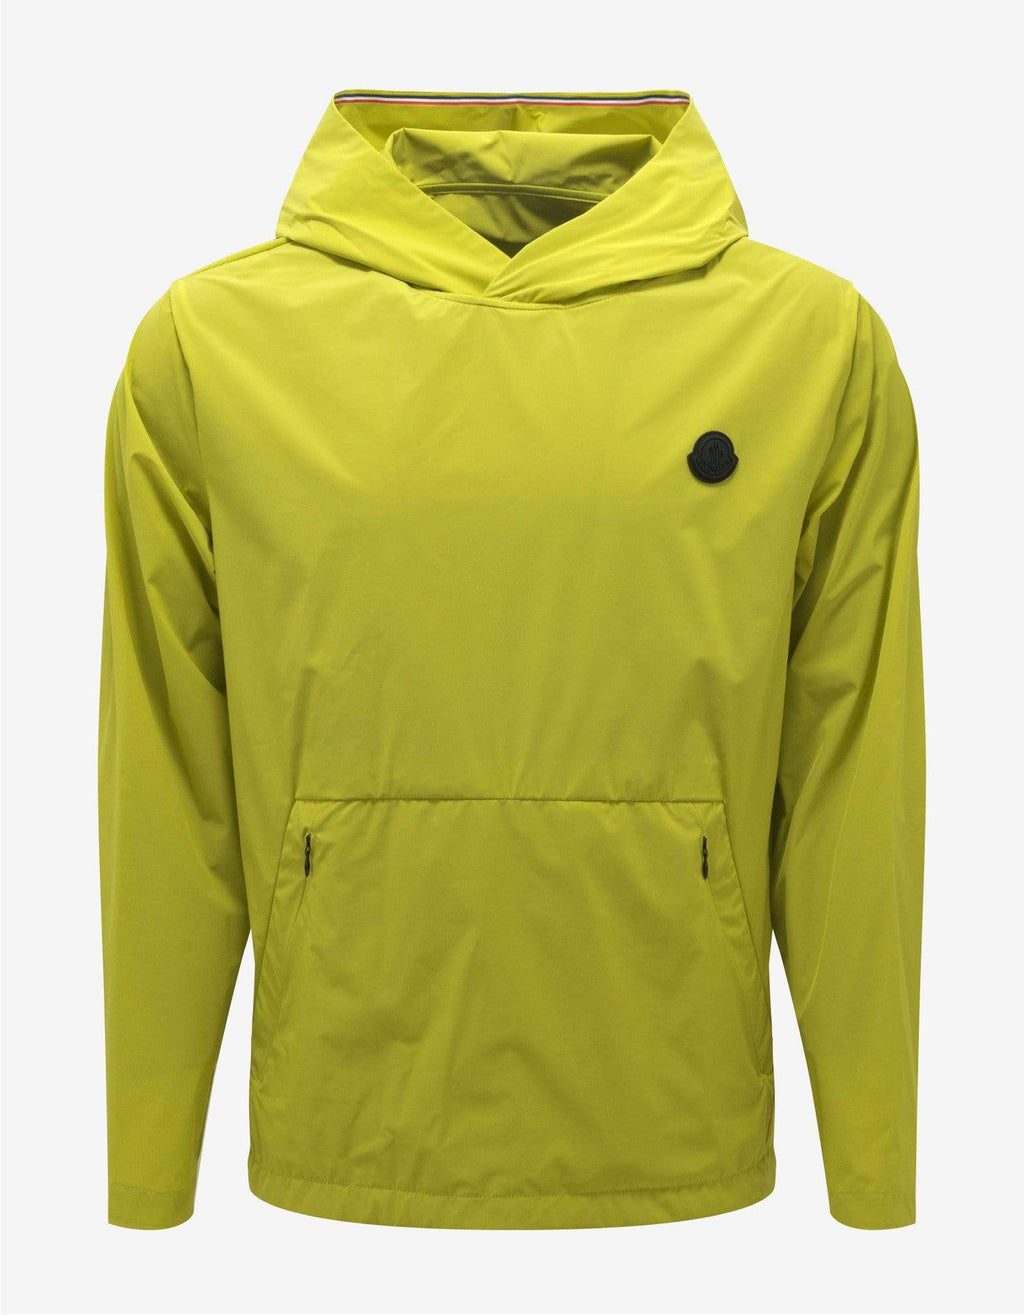 Moncler Moncler Escalle Yellow Nylon Jacket